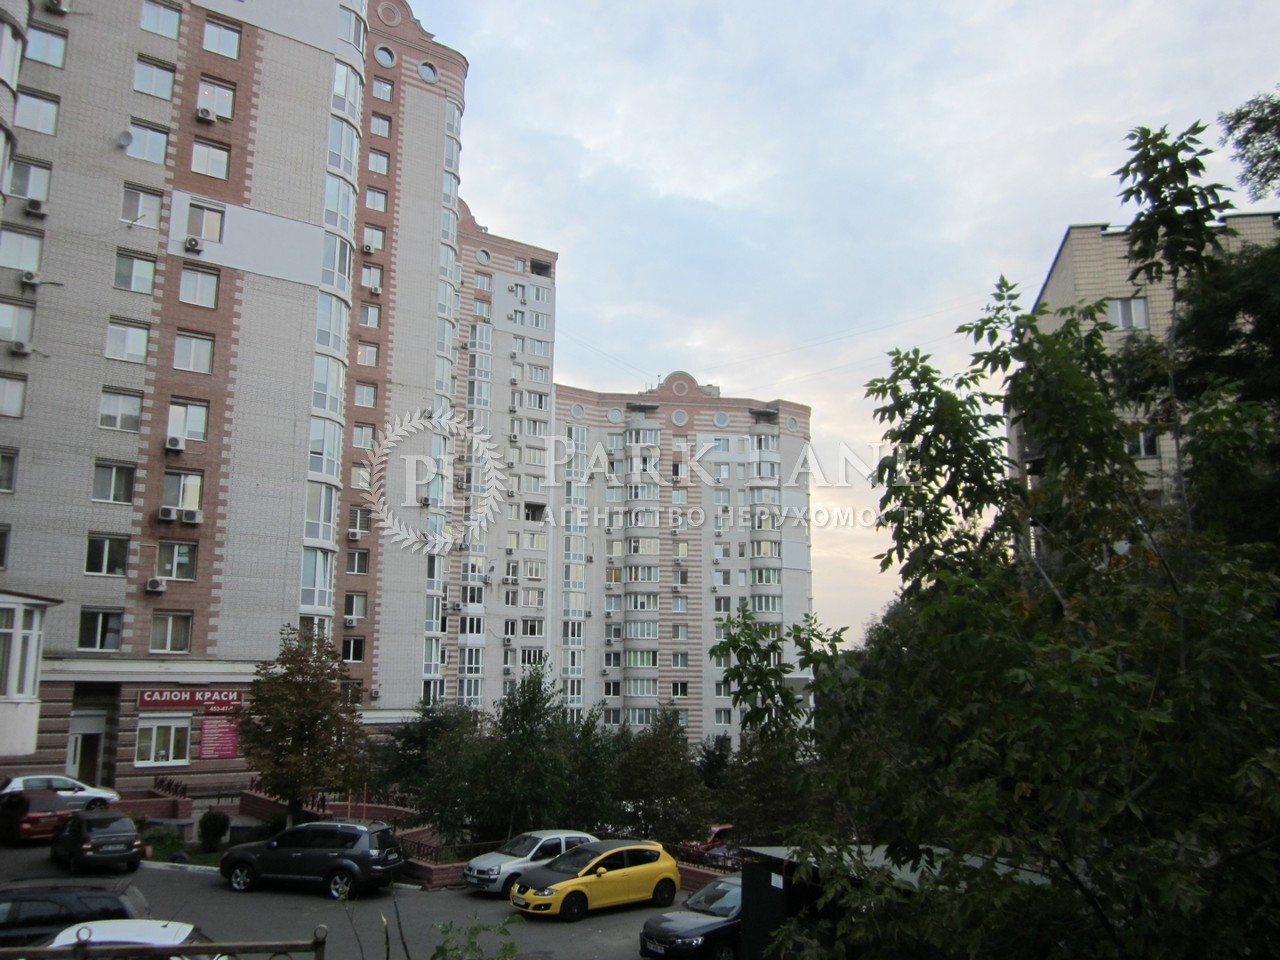  Офіс, G-749082, Руданського С., Київ - Фото 1